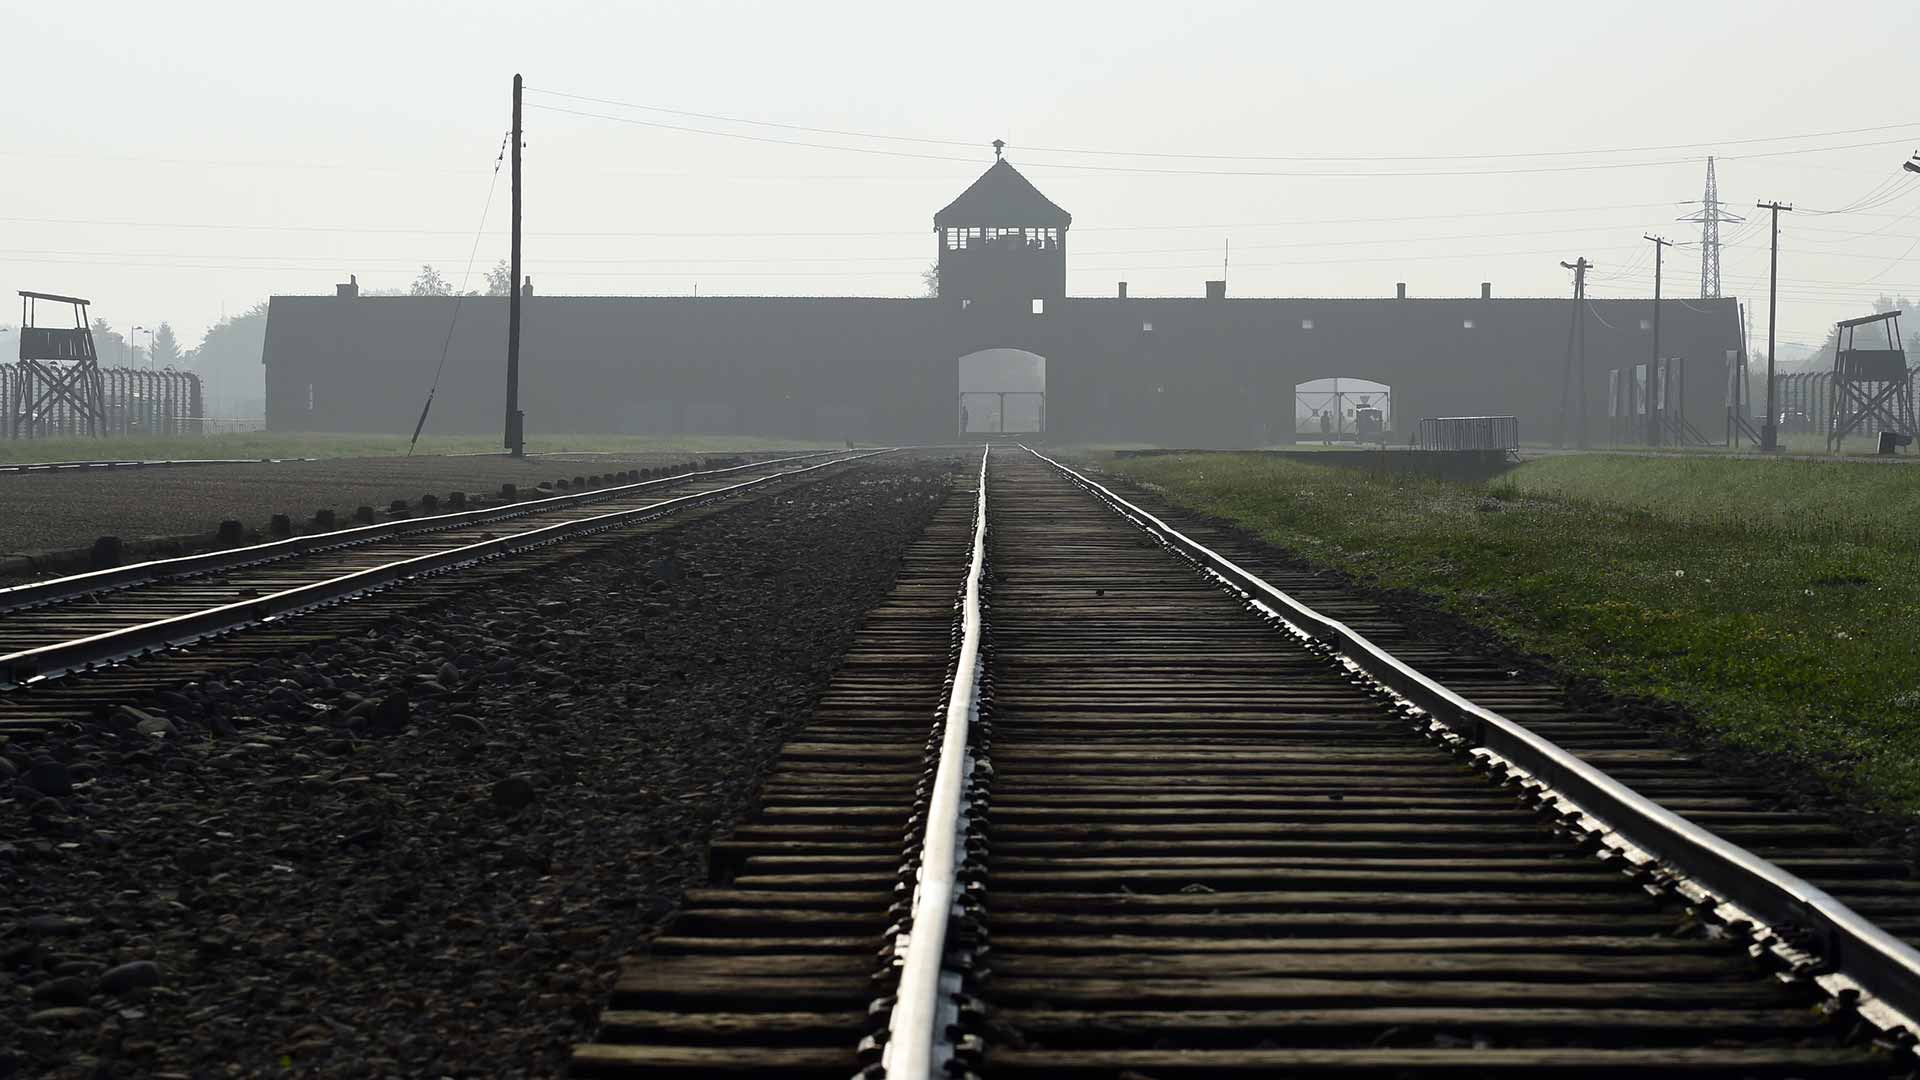 Oskar Gröning, el contable de Auschwitz, podrá entrar en prisión a pesar de sus 96 años